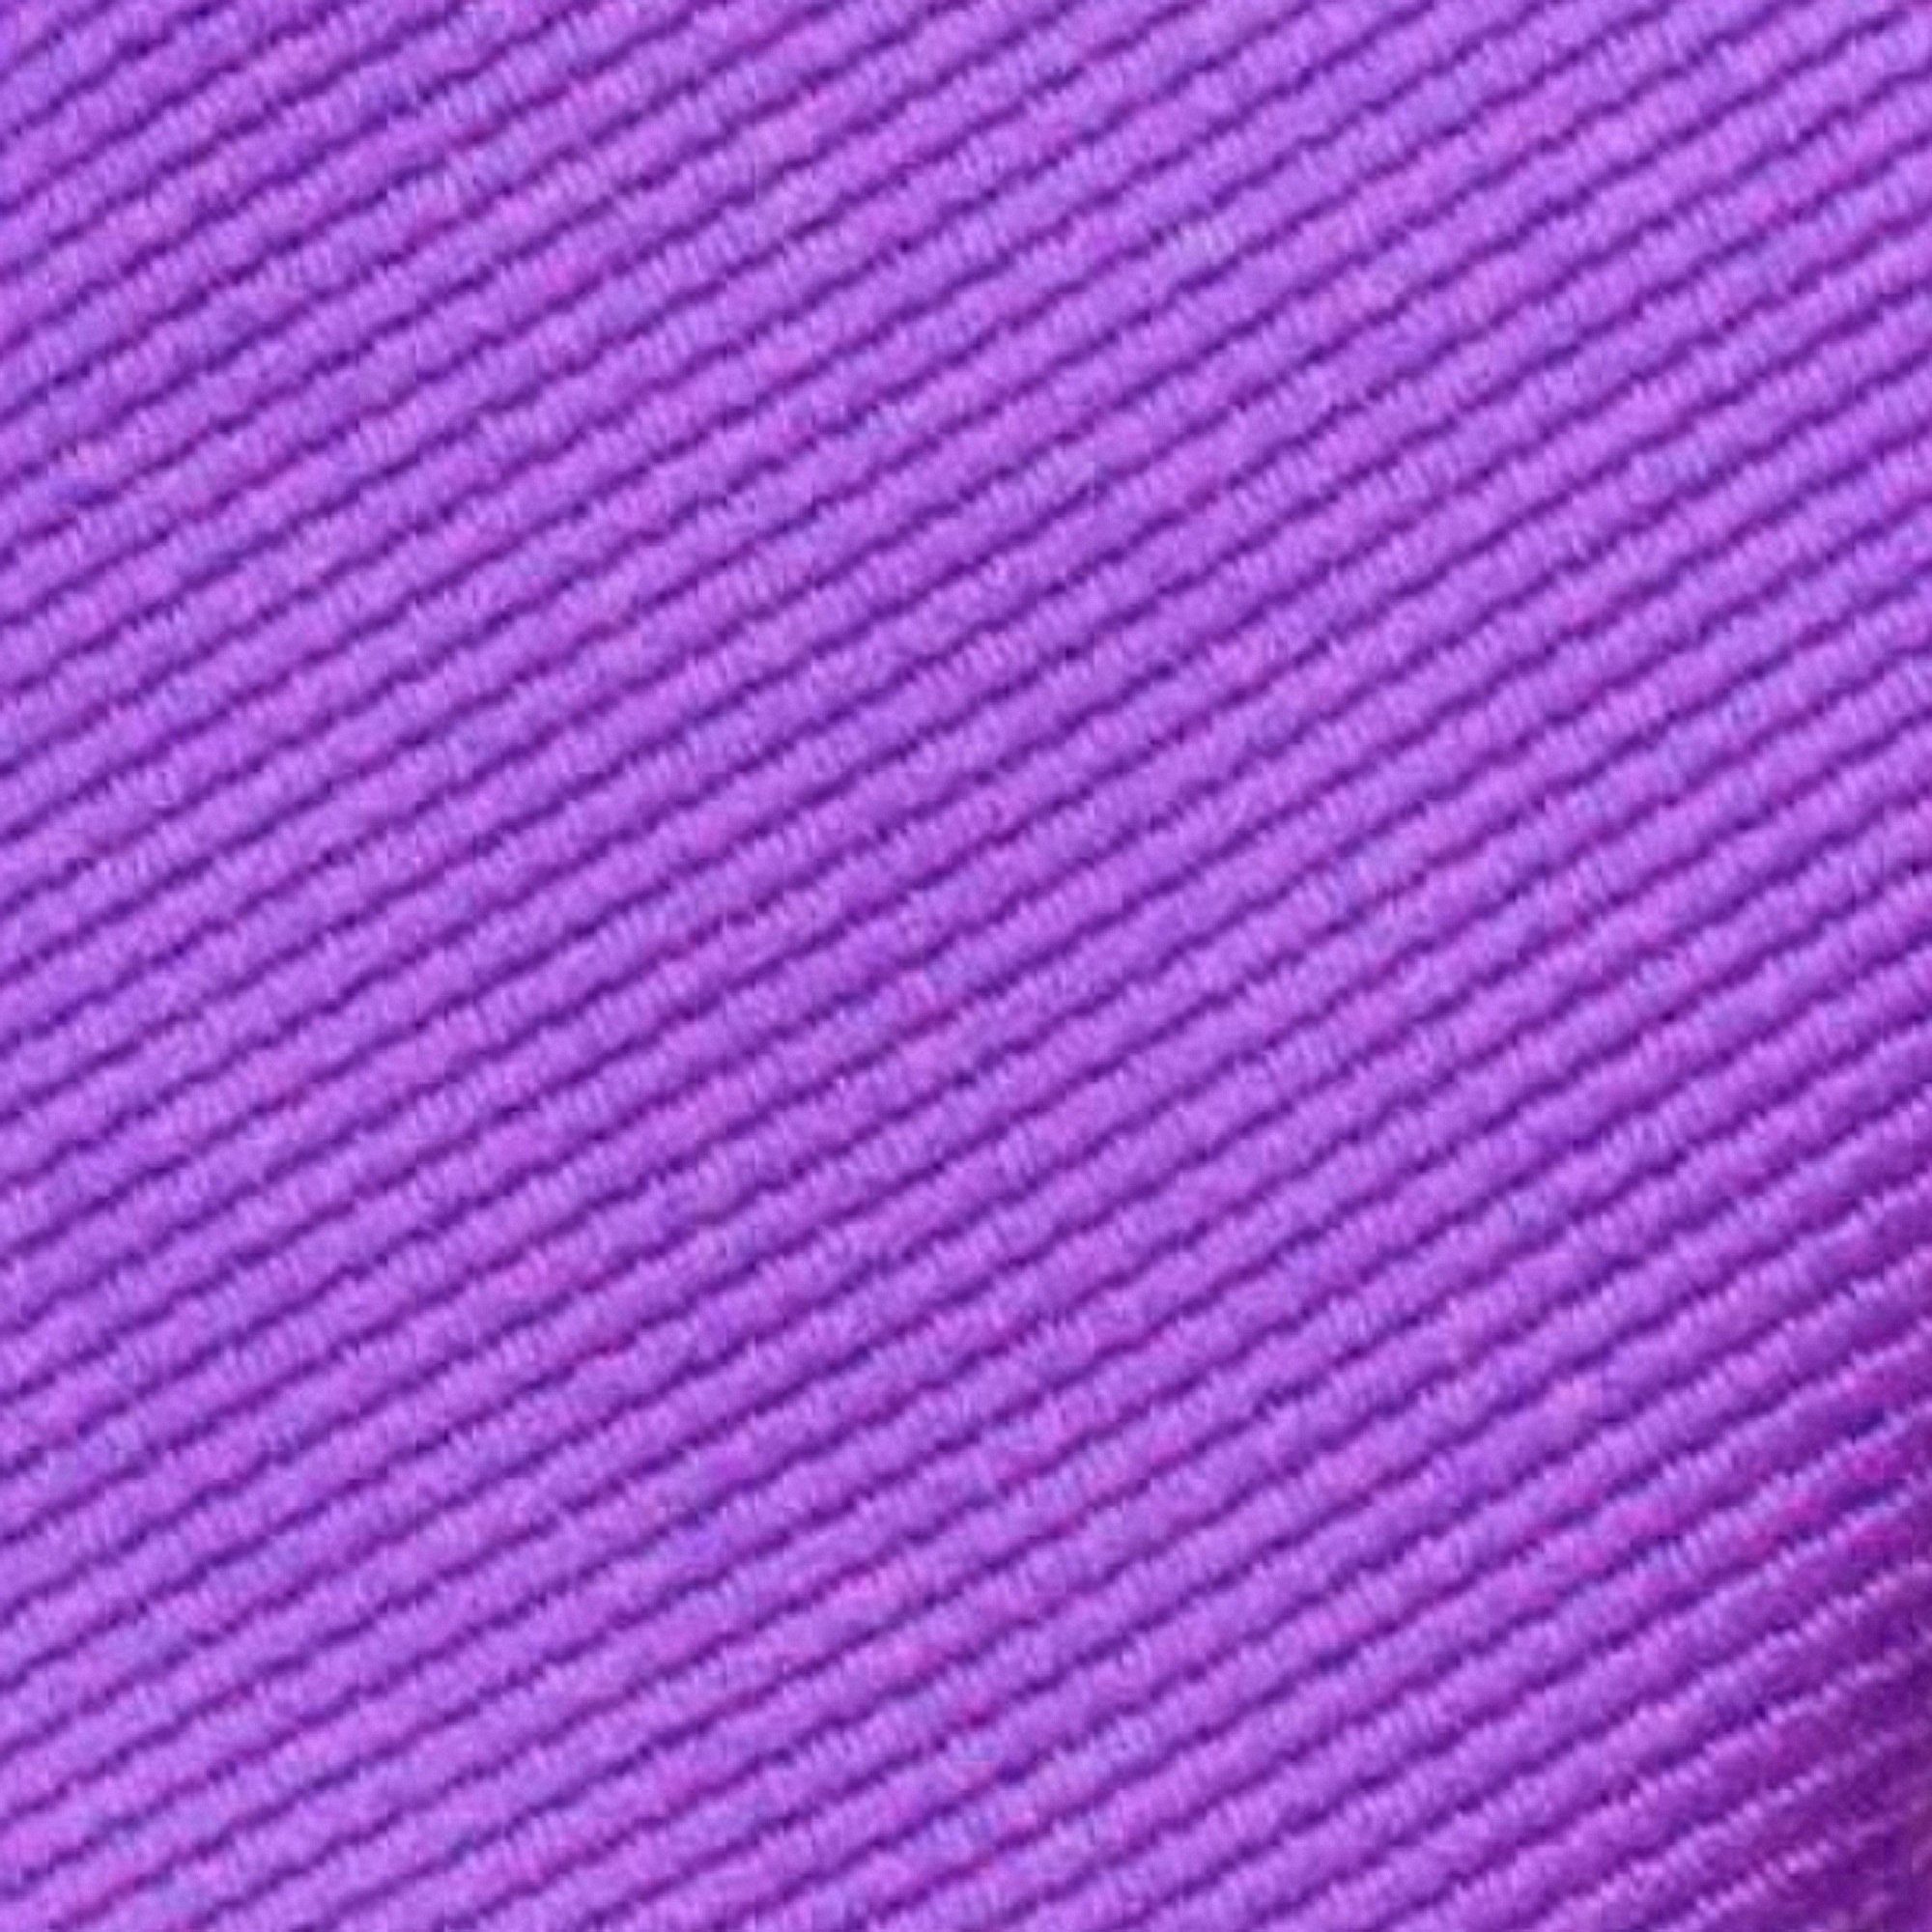 Rips Streifen, (set, mit Schmale Blech-Spardose, Feine Mauve Business-Krawatte, Slim-Fit Rippen Seide-Touch Herren-Krawatte 2-St., Geschenkverpackung) In Flieder-Violett Dose Lavendel Männer-Schlips GASSANI Uni Männer Krawatte Blau-Lila Geschenk-Box Gestreifte